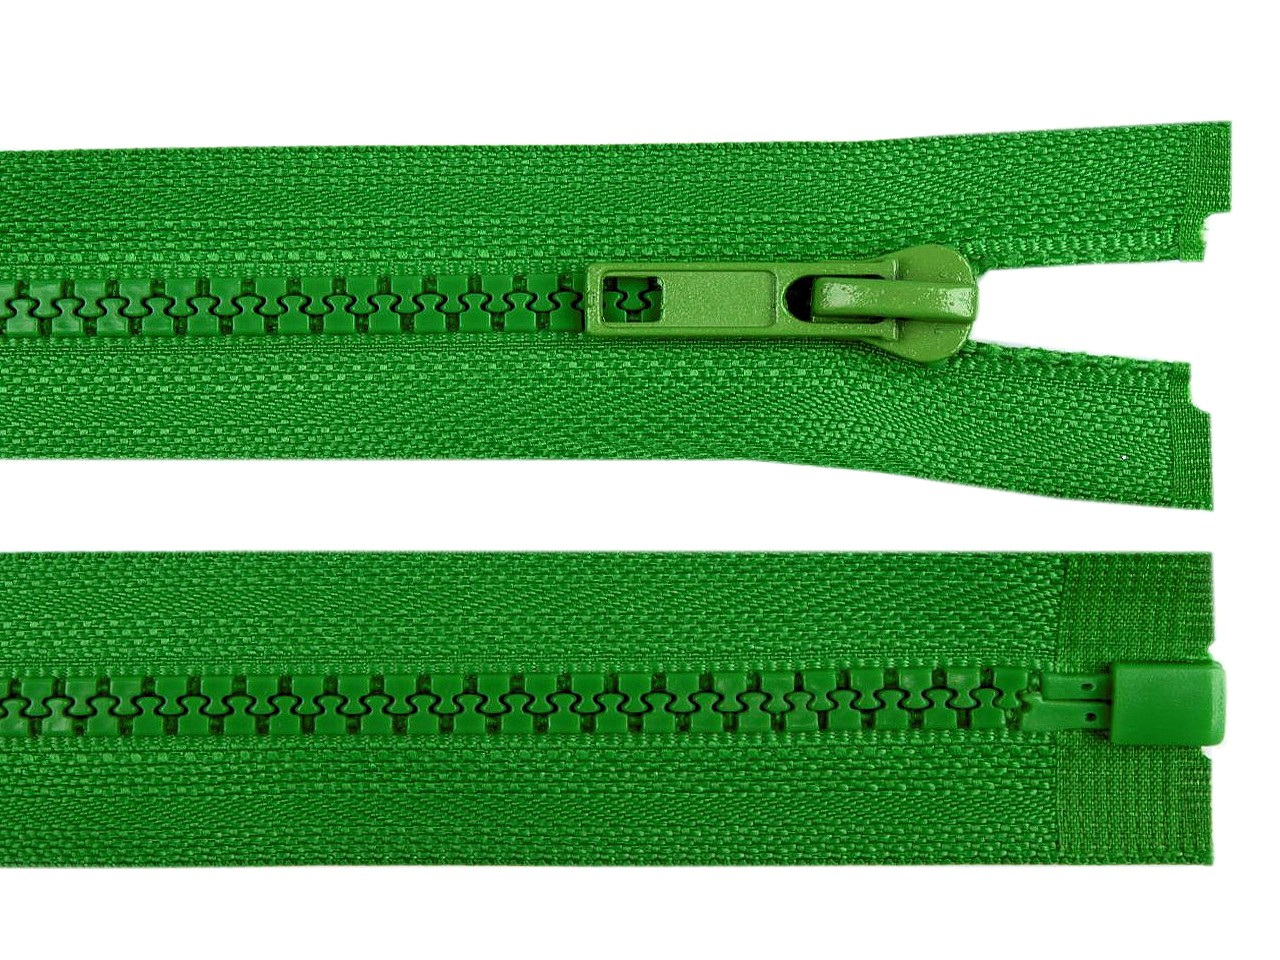 Kostěný zip šíře 5 mm délka 70 cm bundový, barva 239 Fern Green